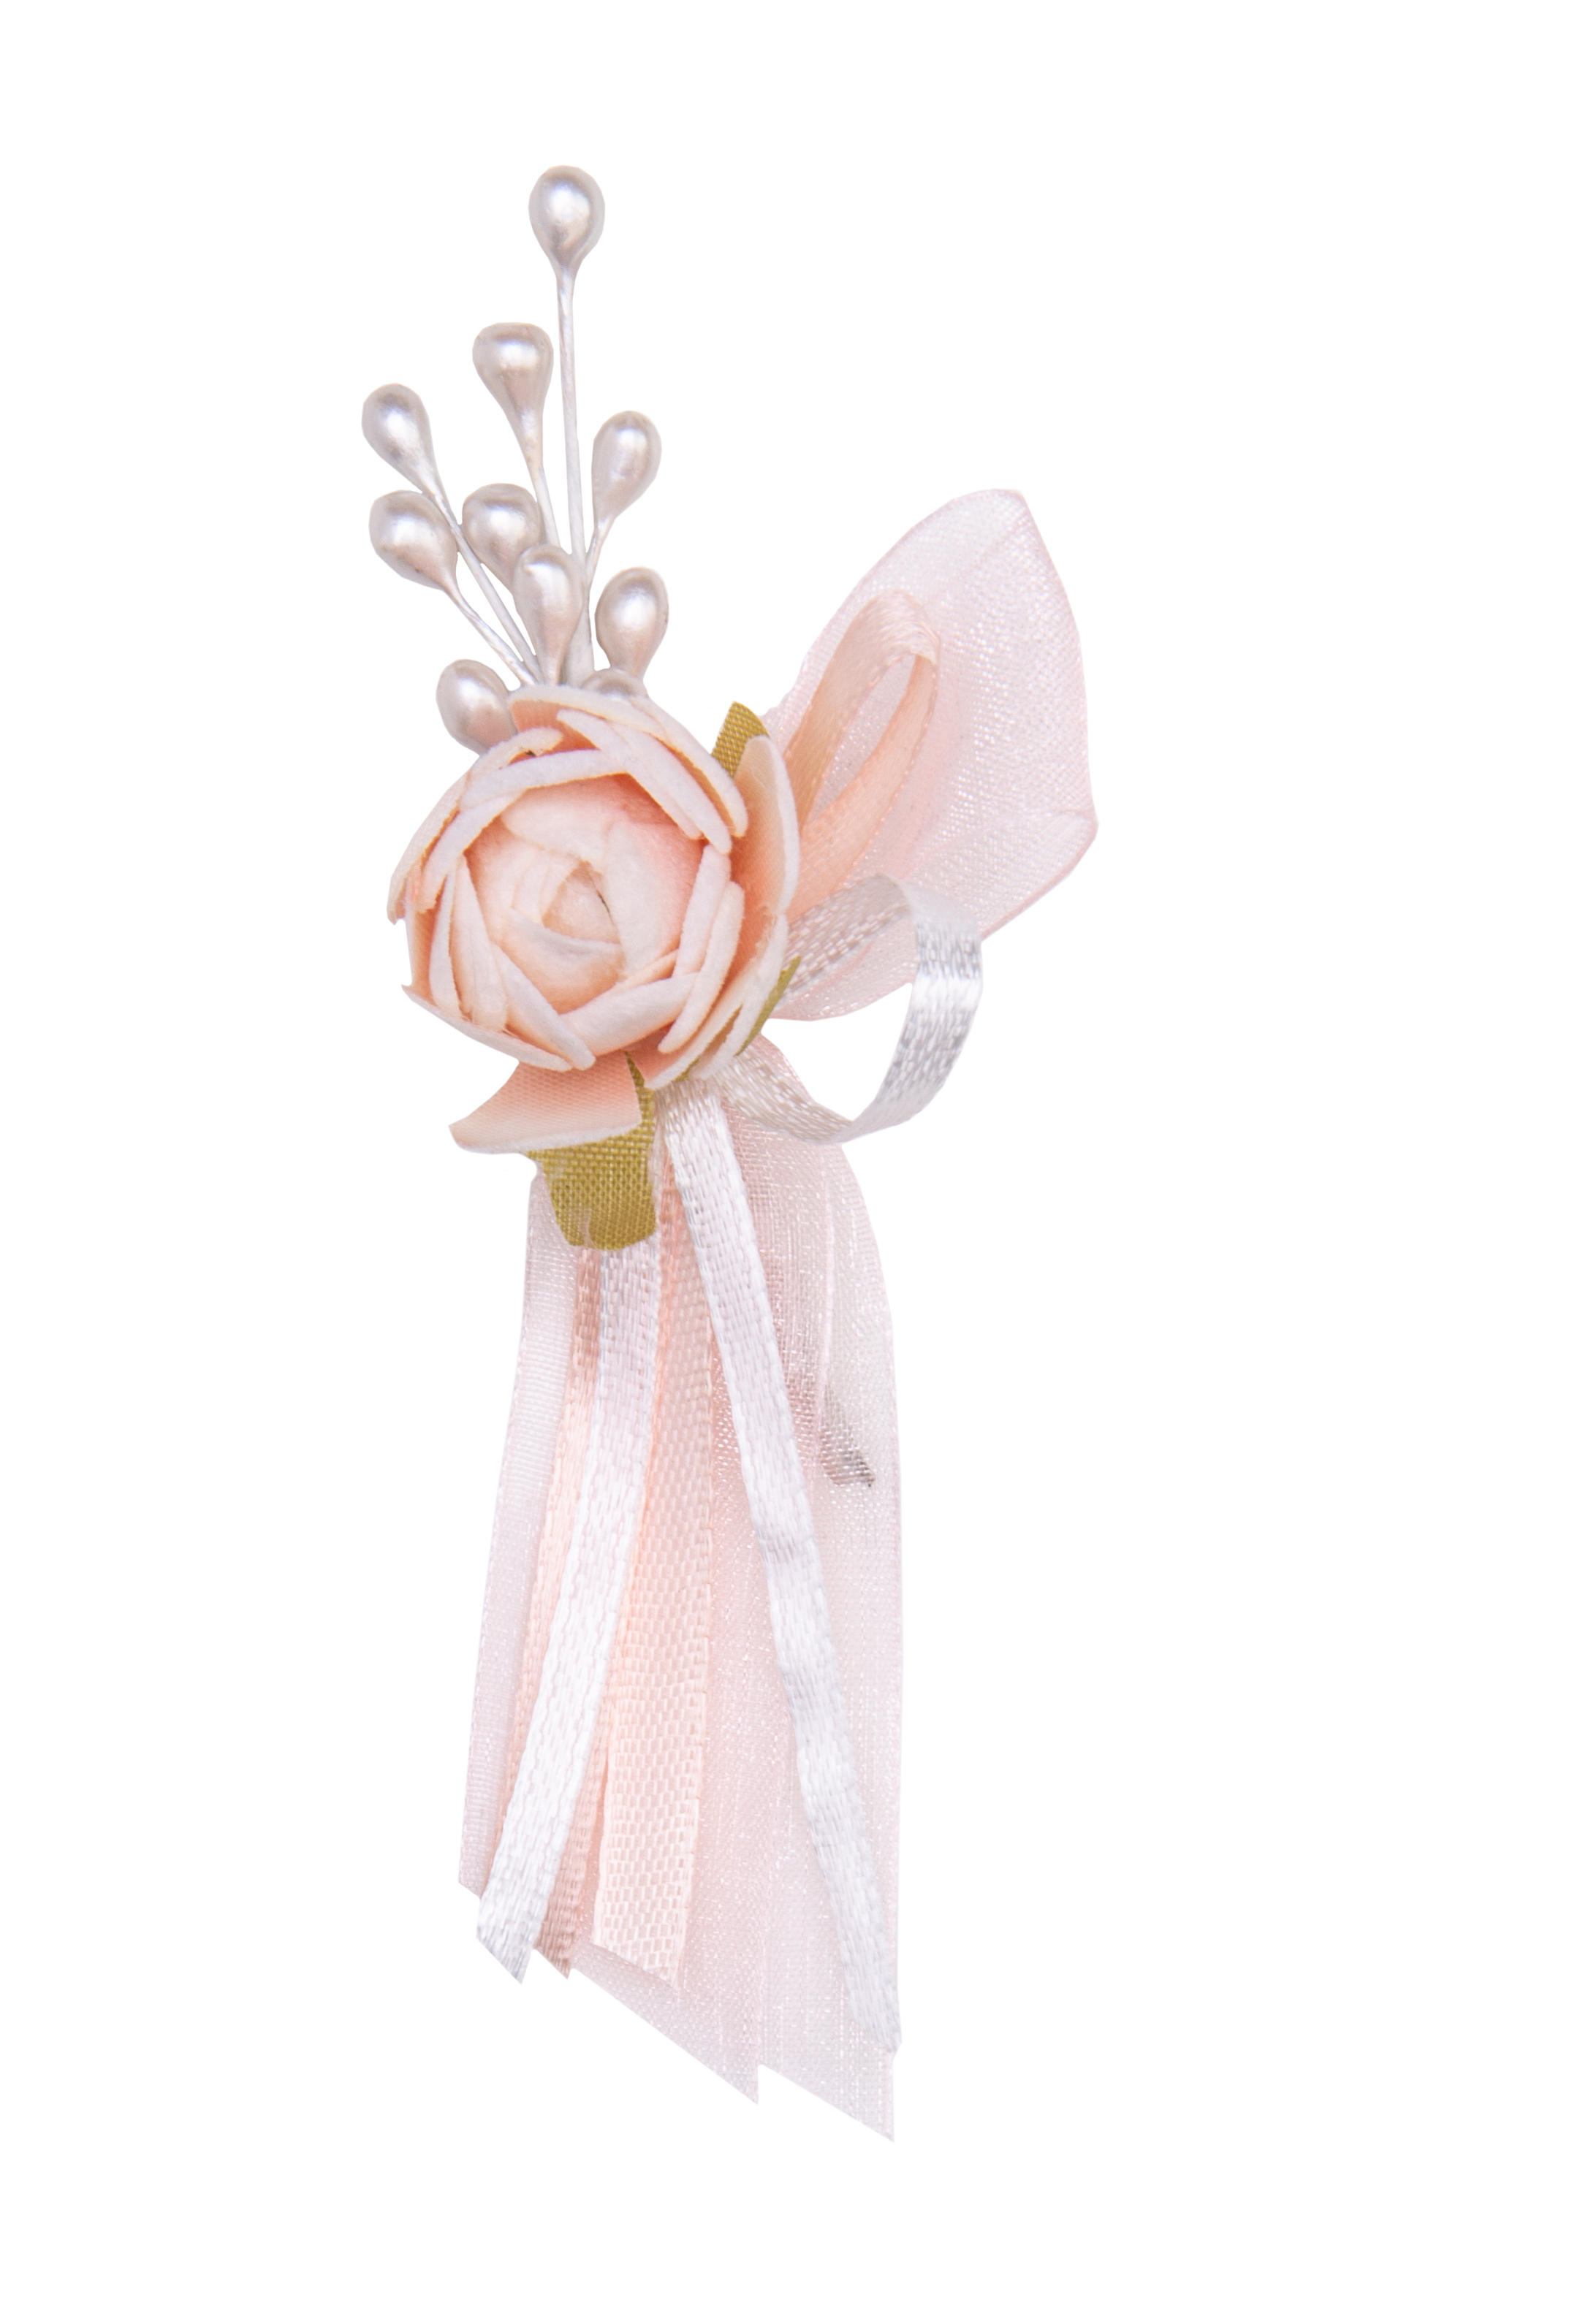 Gästeanstecker für Hochzeiten Rose mit Schleife light peach 11x5cm